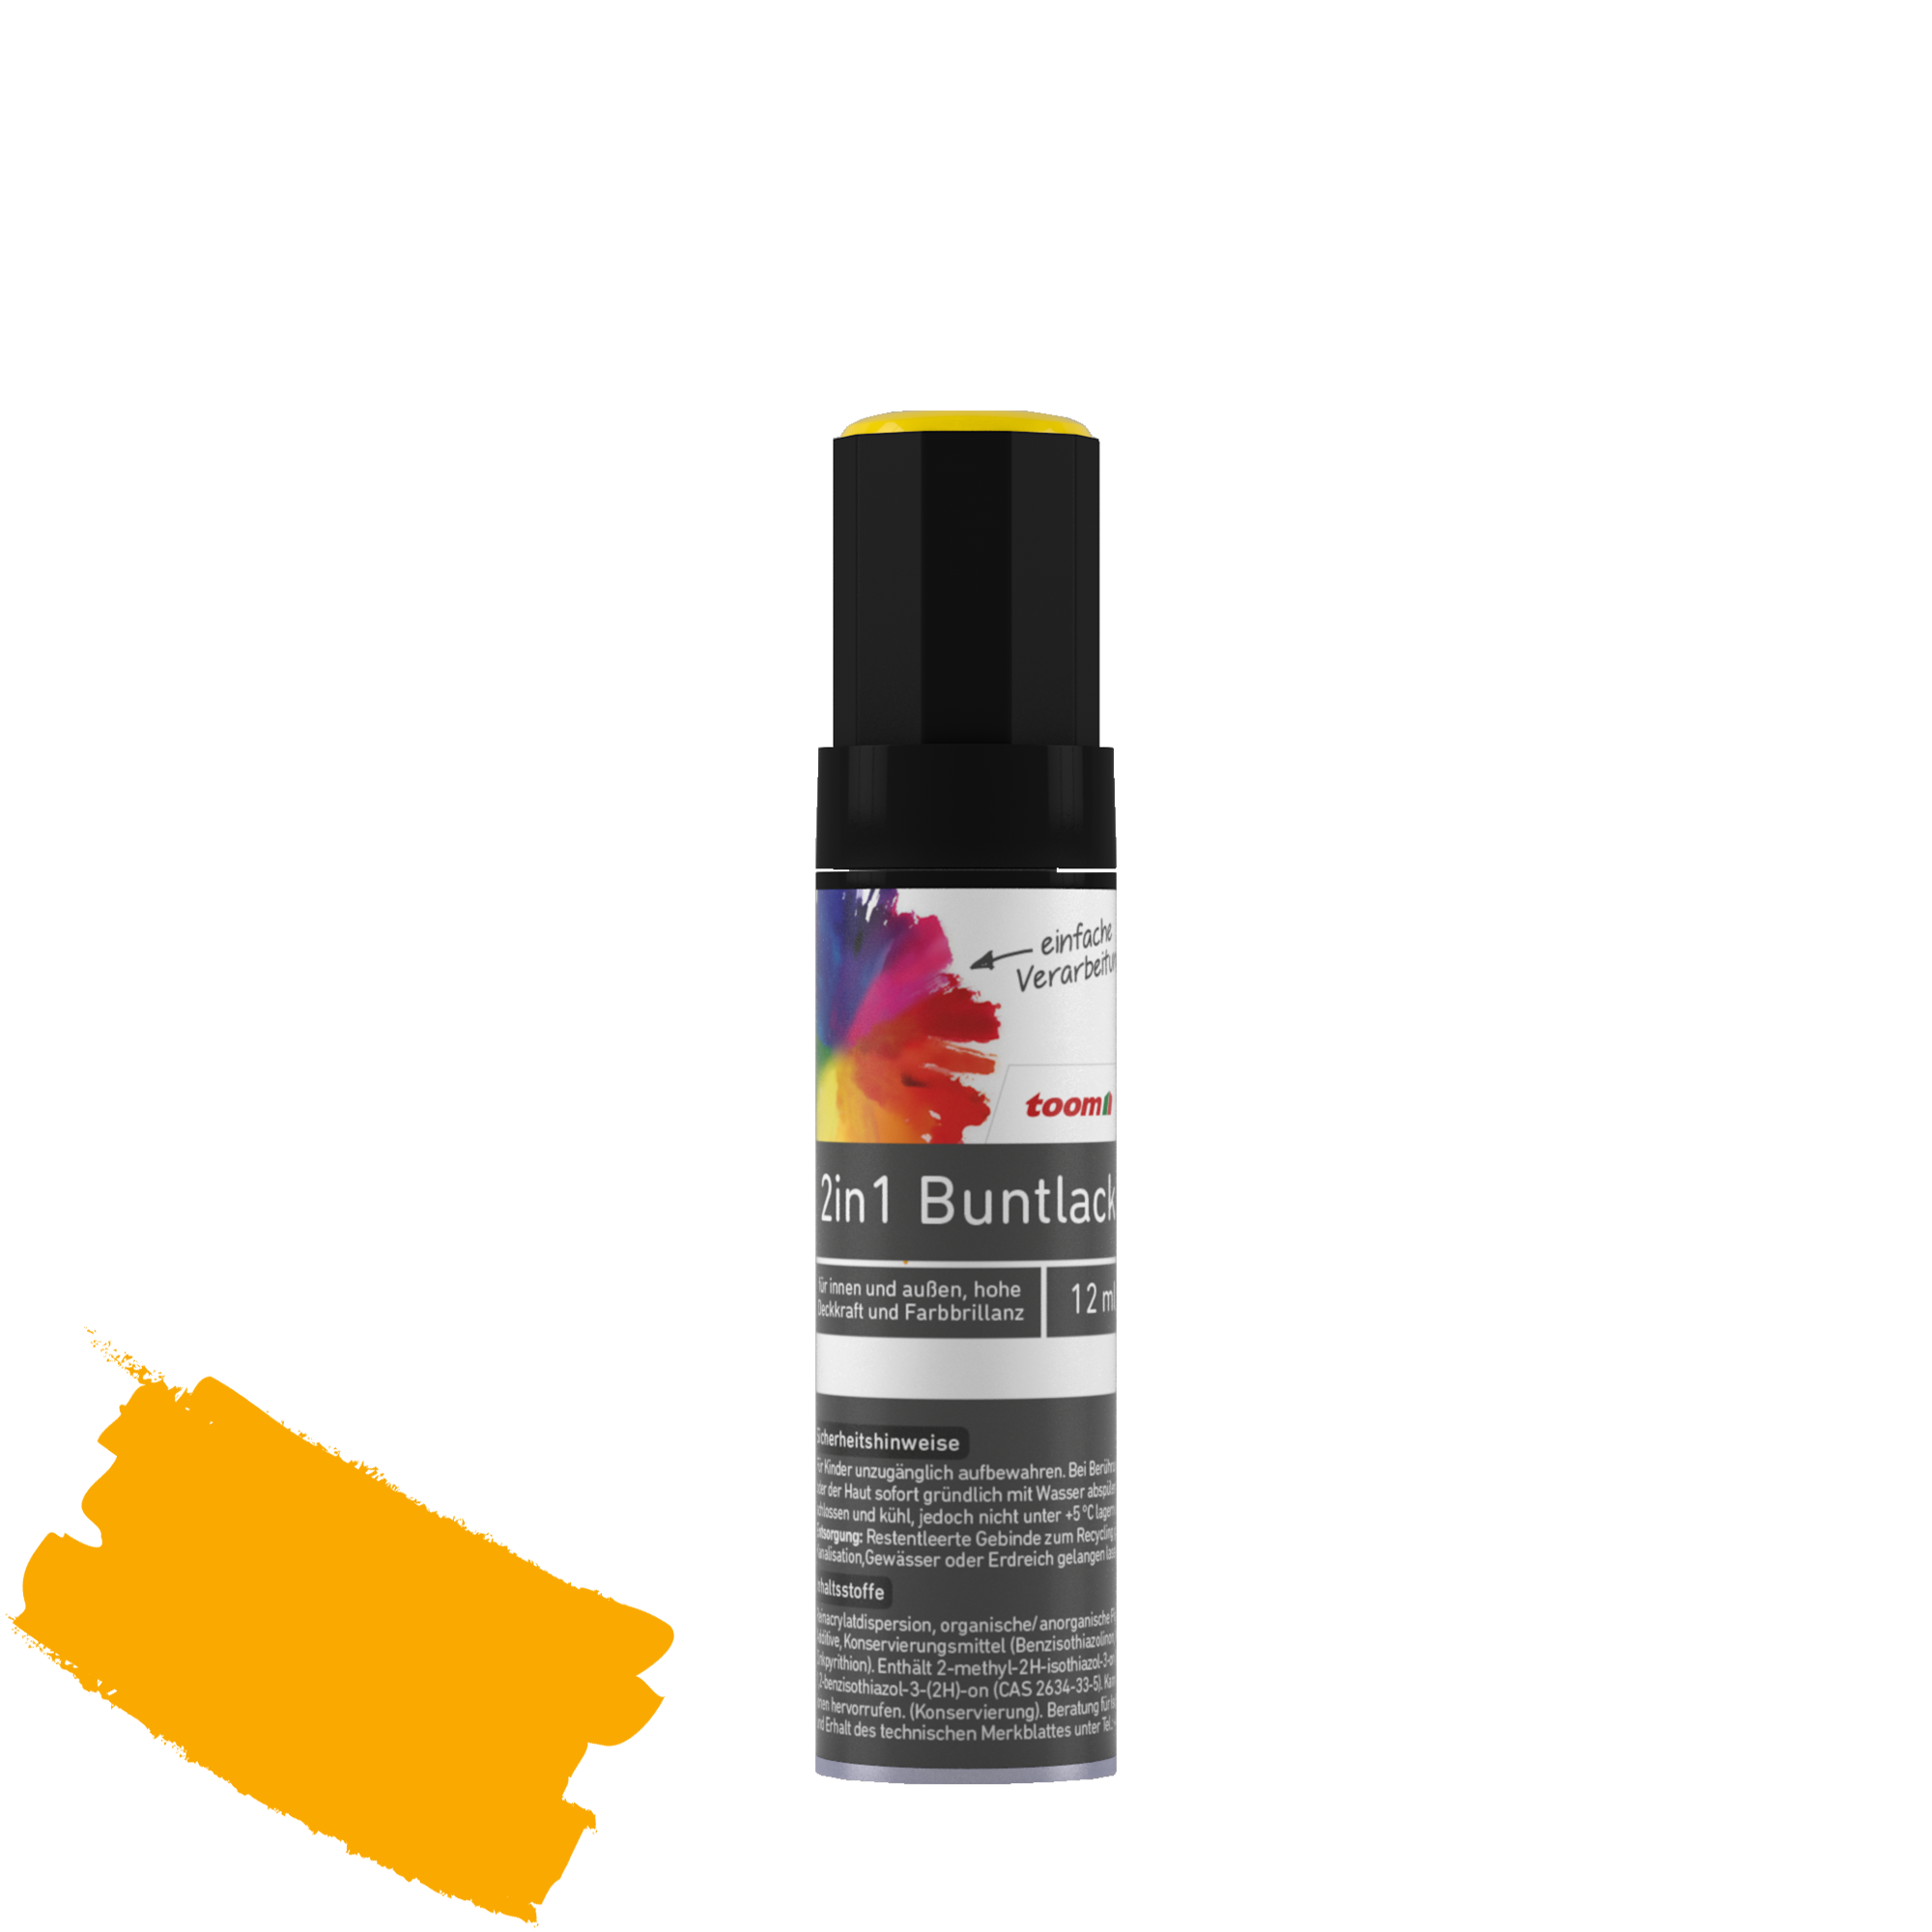 2in1 Buntlackstift 'Sonnenblume' orangegelb glänzend 12 ml + product picture